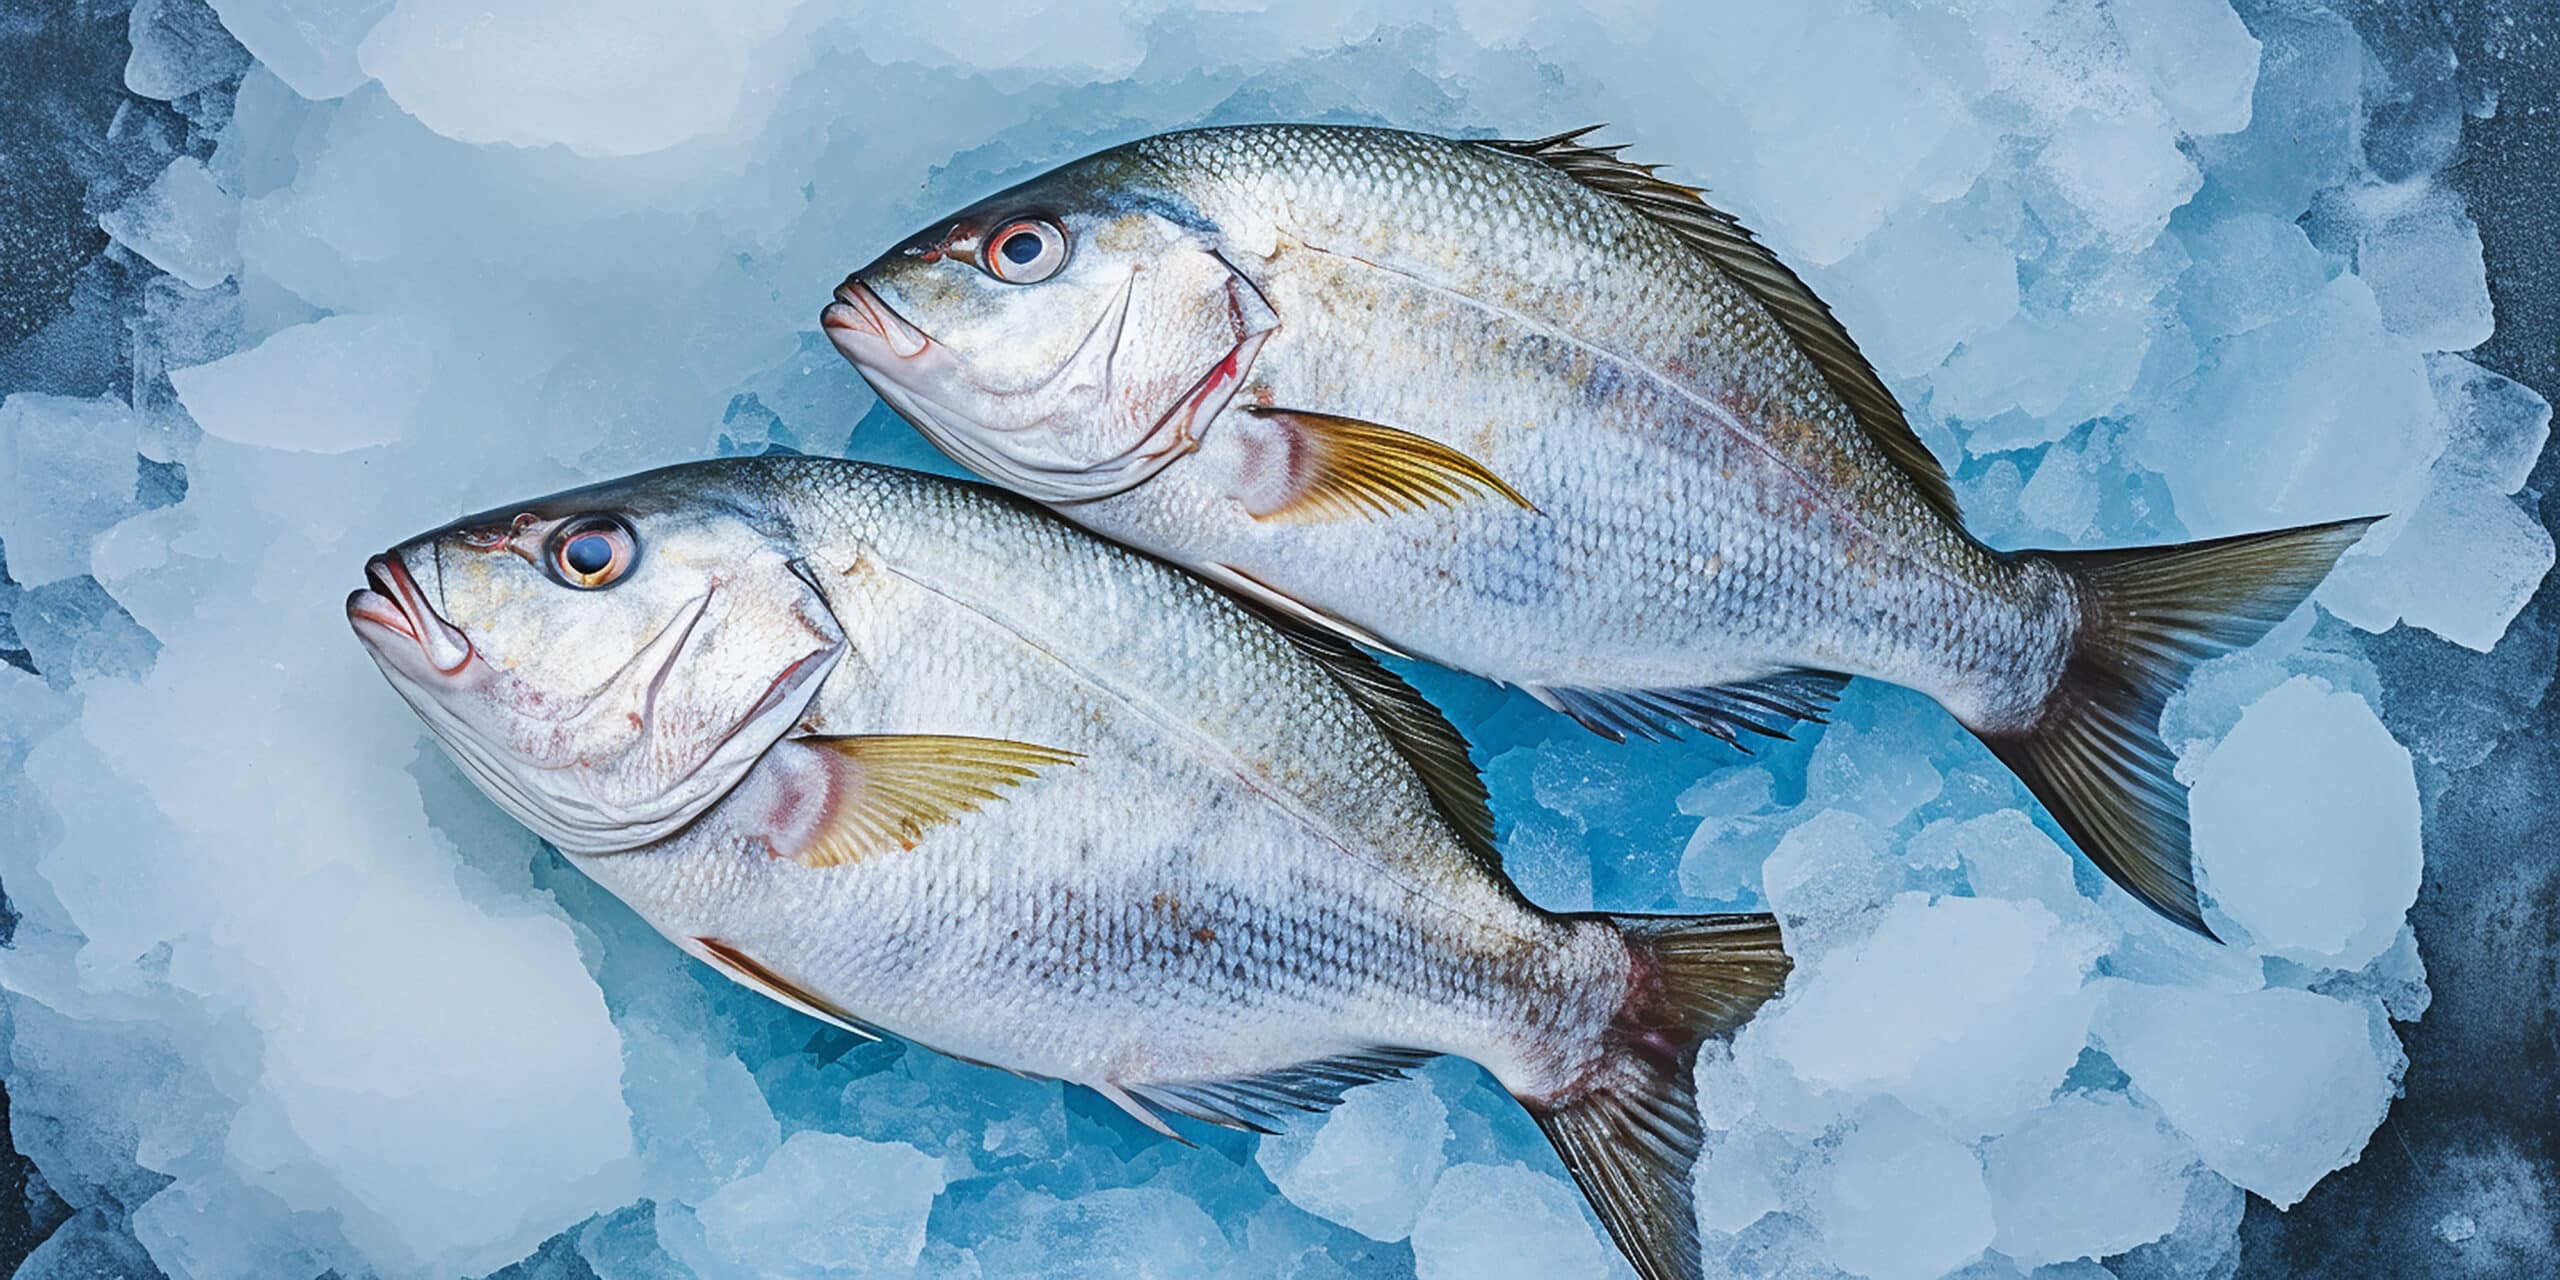 fanatic4fishing.com : Do fish bite less when cold?